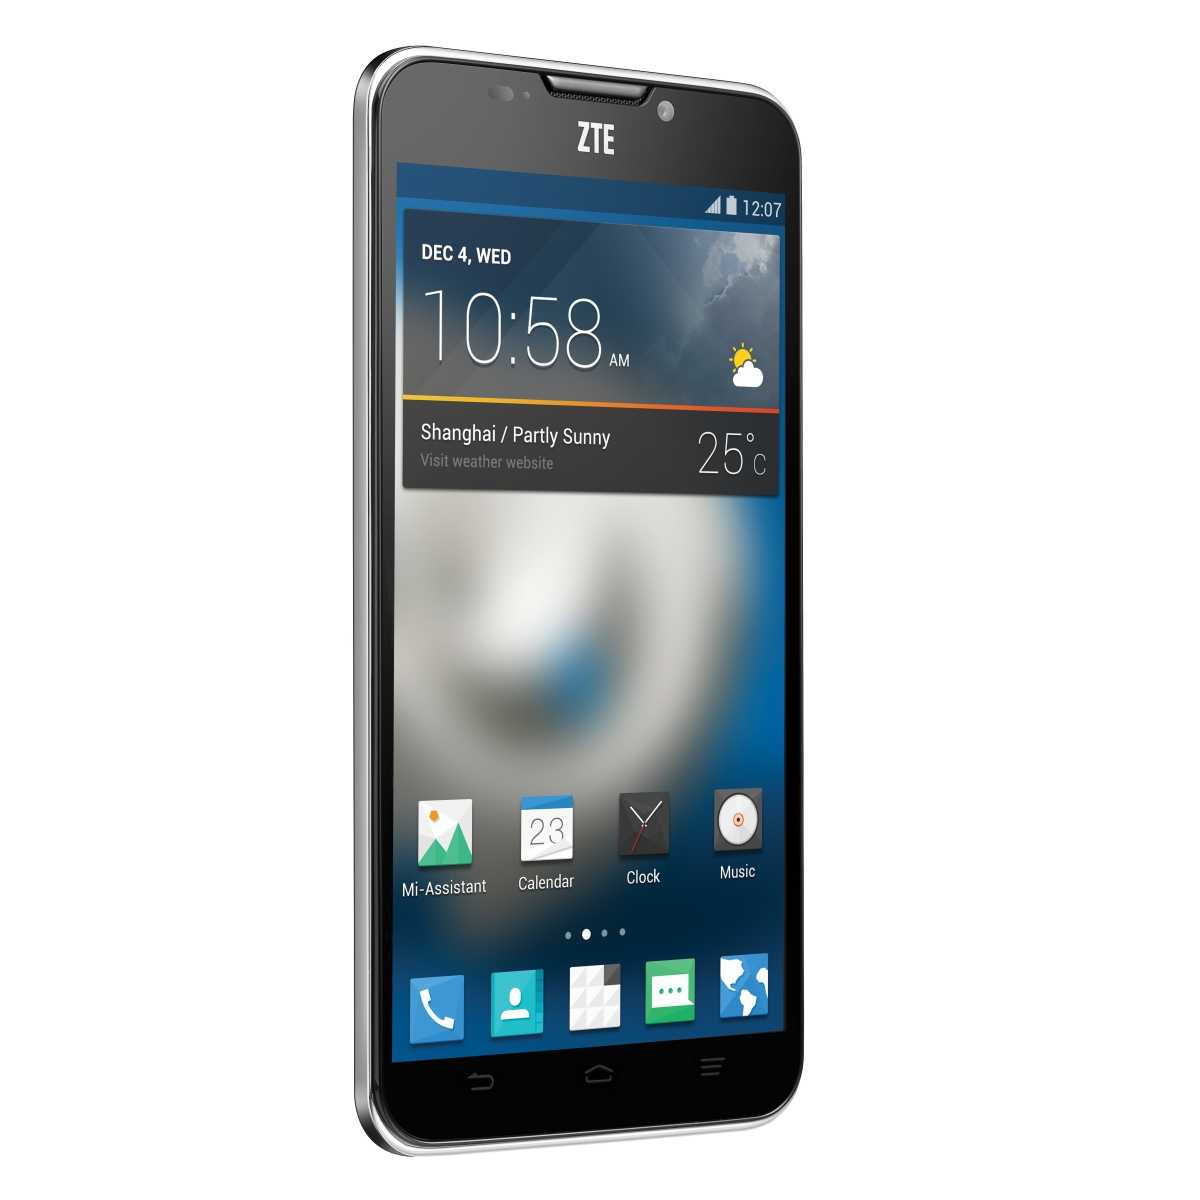 Мобильный телефон ZTE Grand S - подробные характеристики обзоры видео фото Цены в интернет-магазинах где можно купить мобильный телефон ZTE Grand S